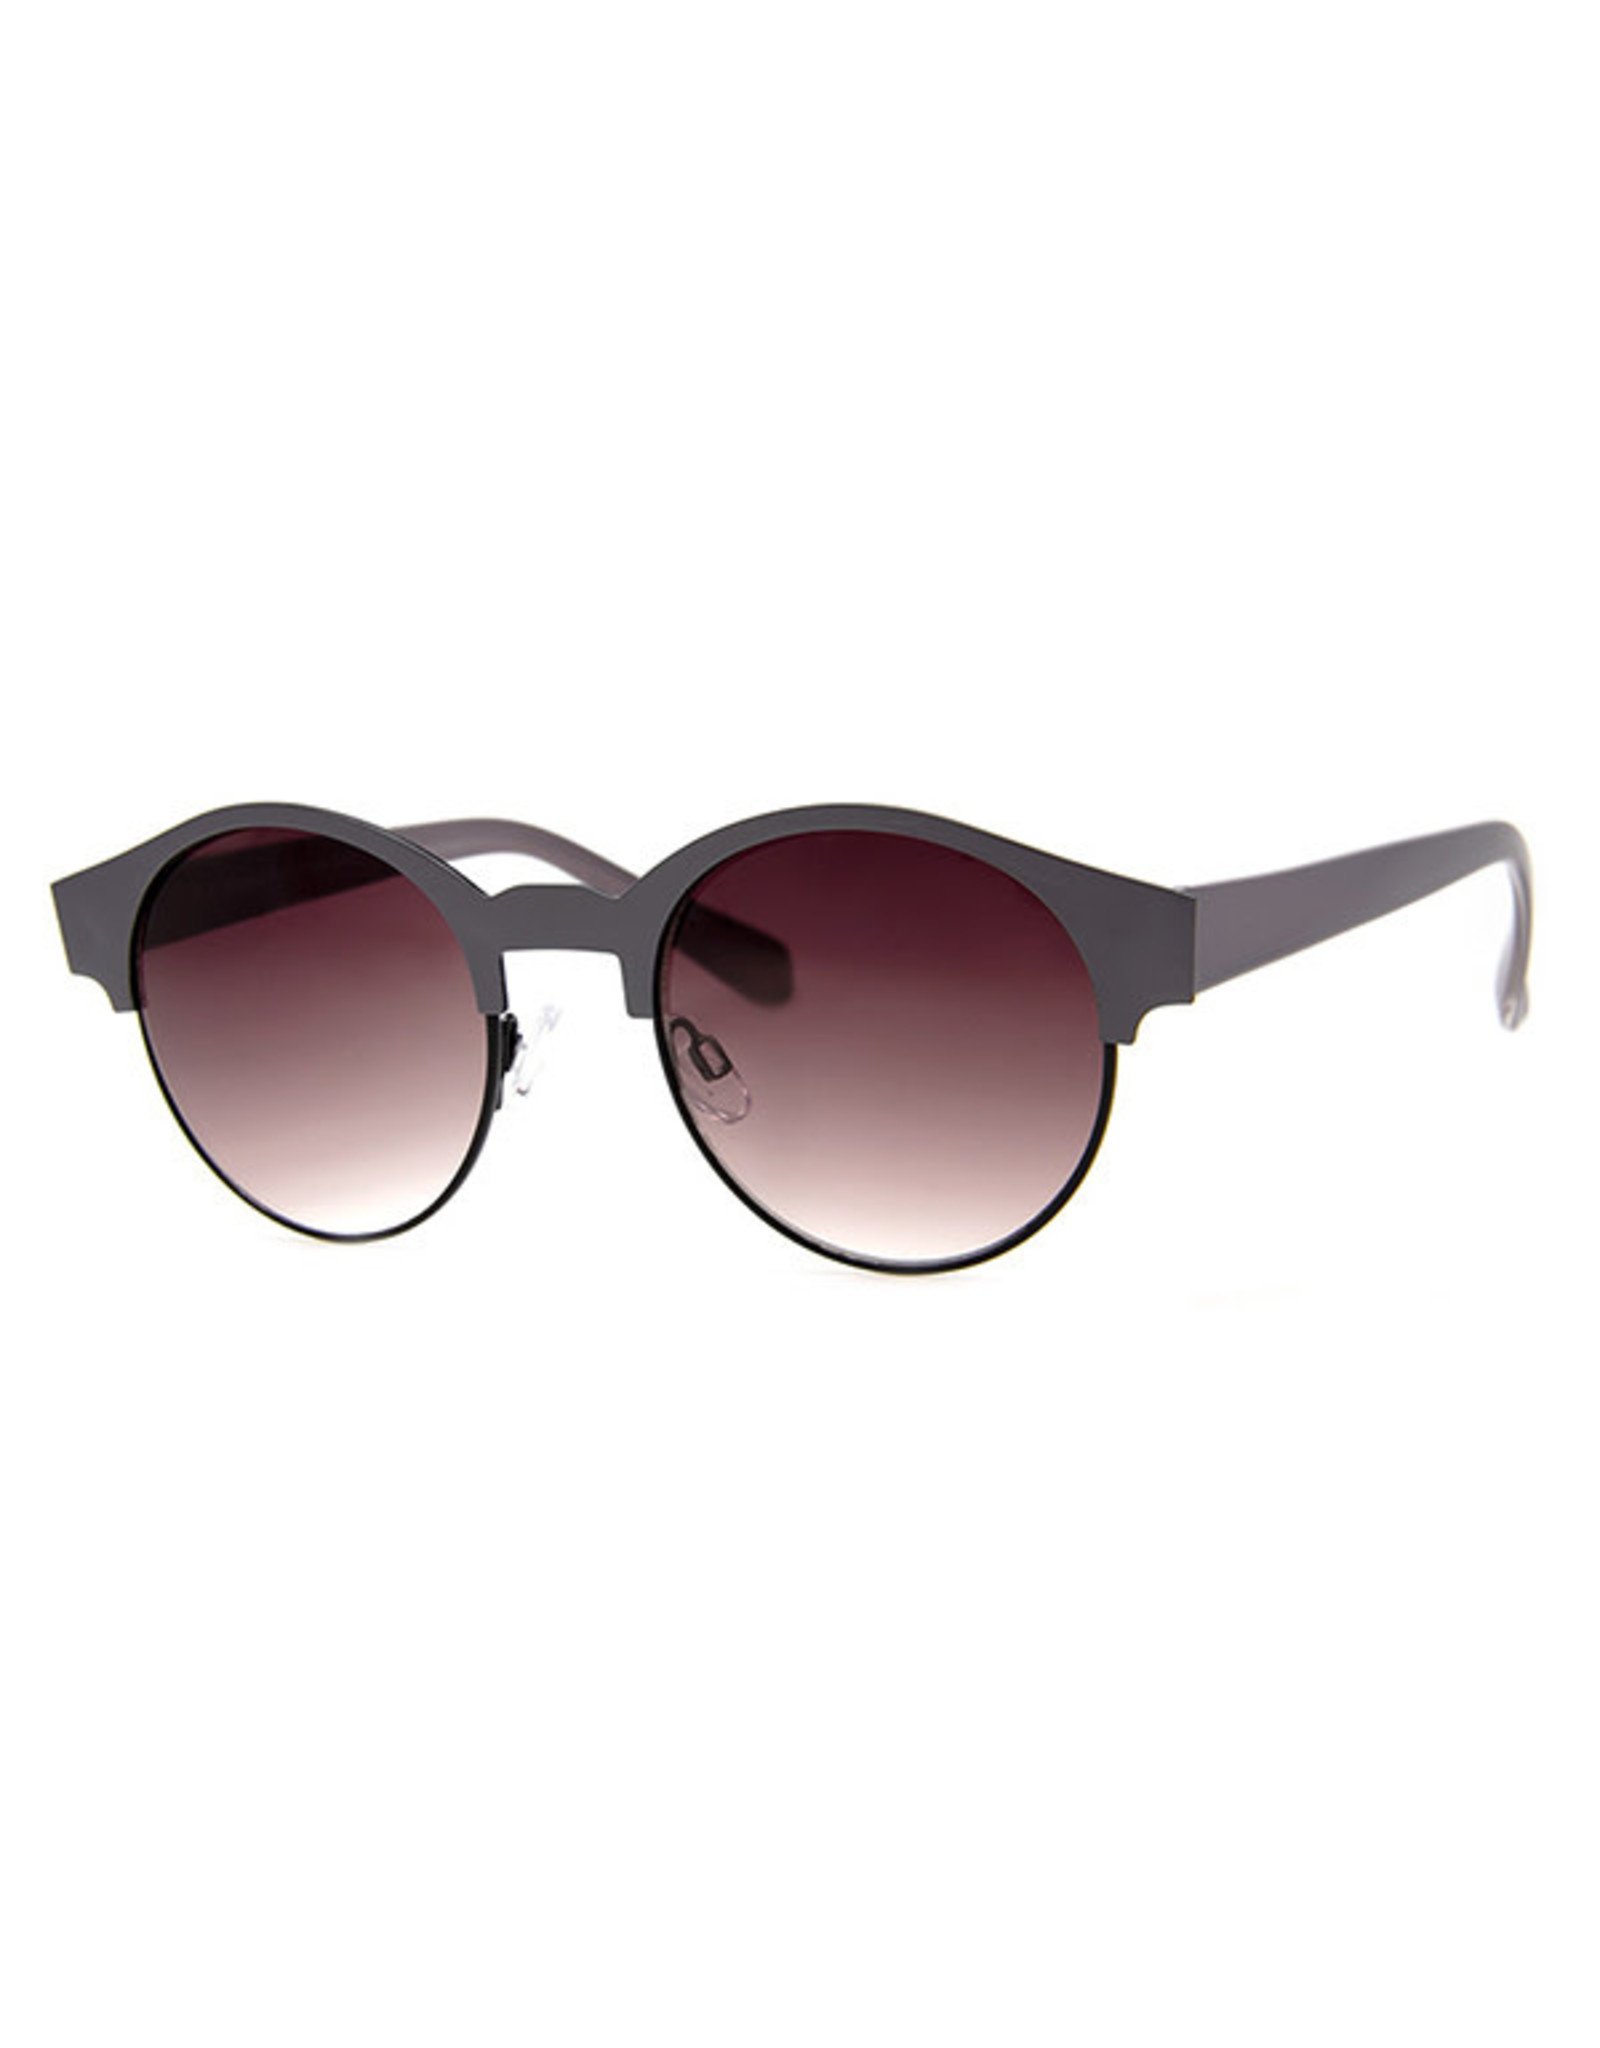 AJM - Round Half-Colored Frame Sunglasses